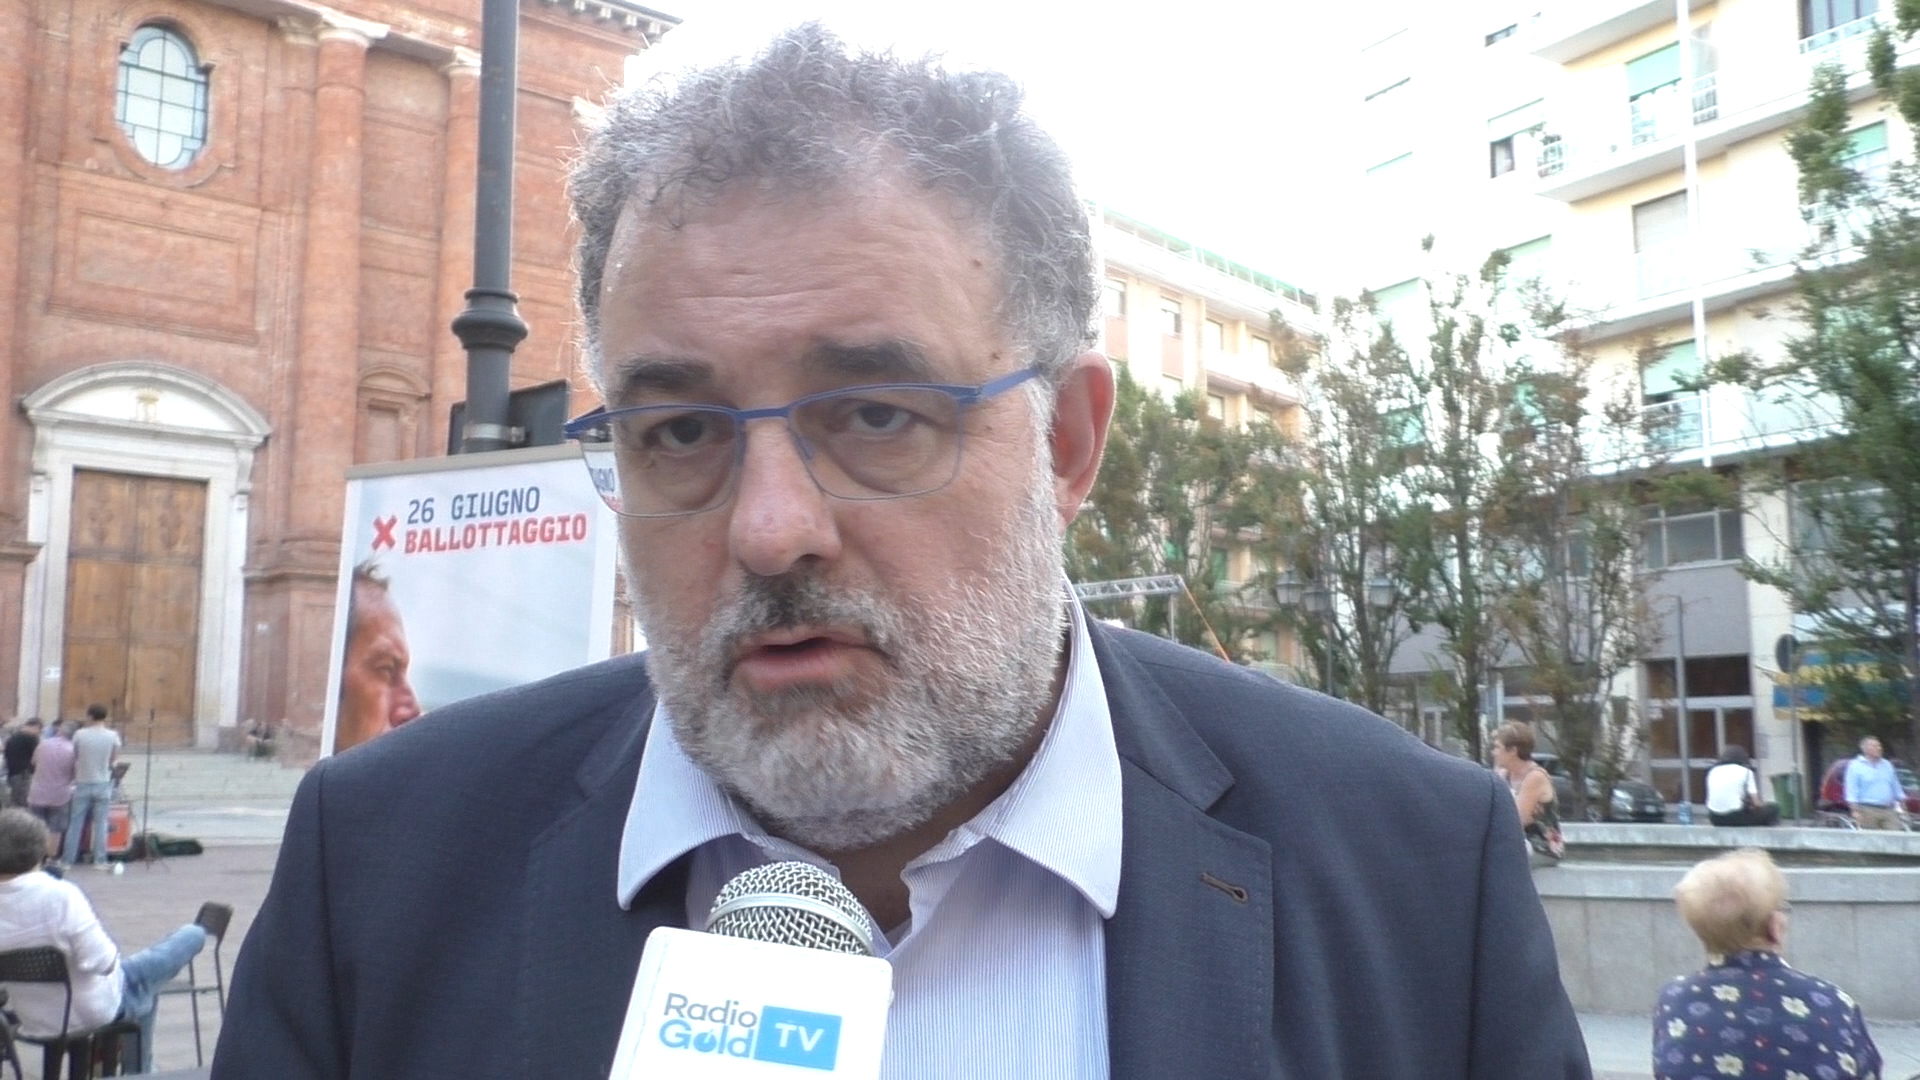 Muliere torna sindaco di Novi Ligure. Fornaro: “Ha vinto la buona politica”